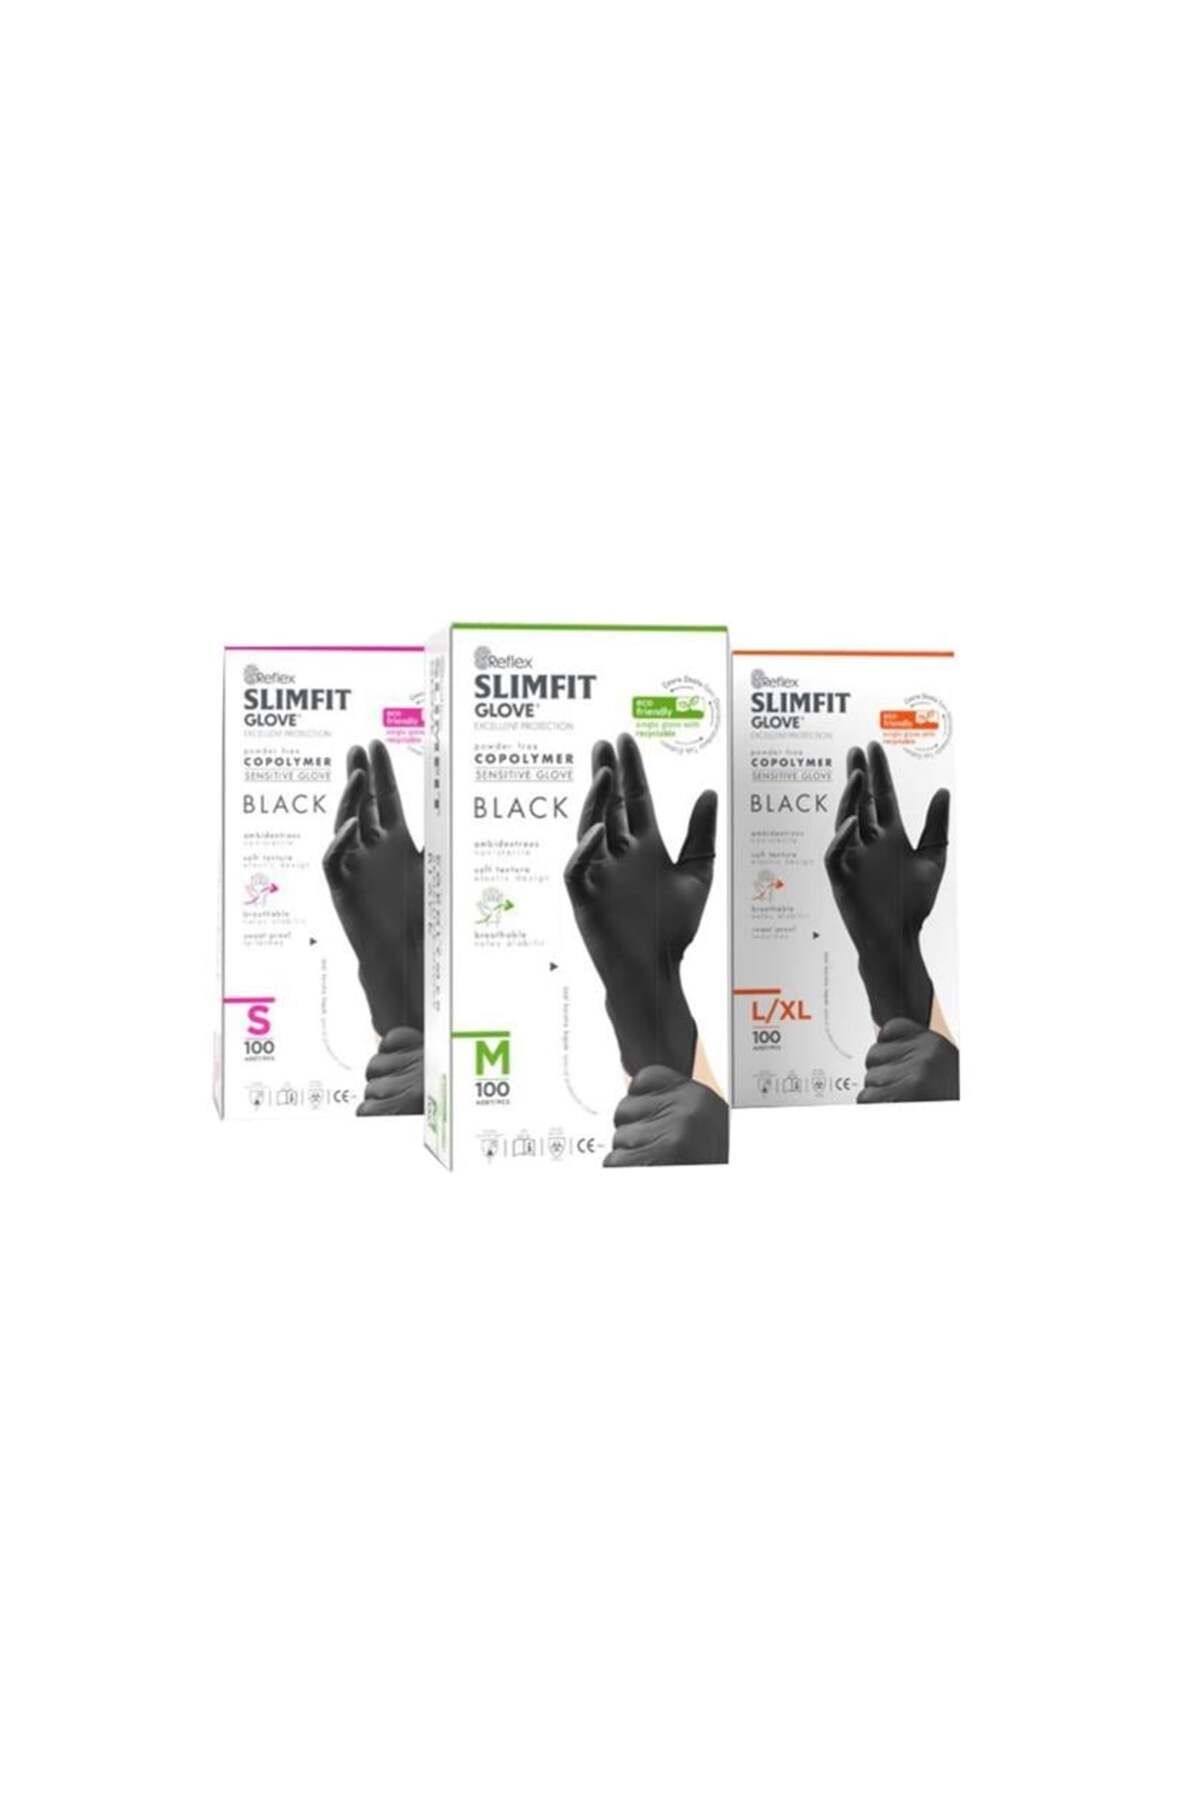 Reflex Slımfıt Glove Tek Kullanımlık Yeni Nesil Teknoloji Siyah M Beden Eldiven 100'lü Paket 20 Kutu